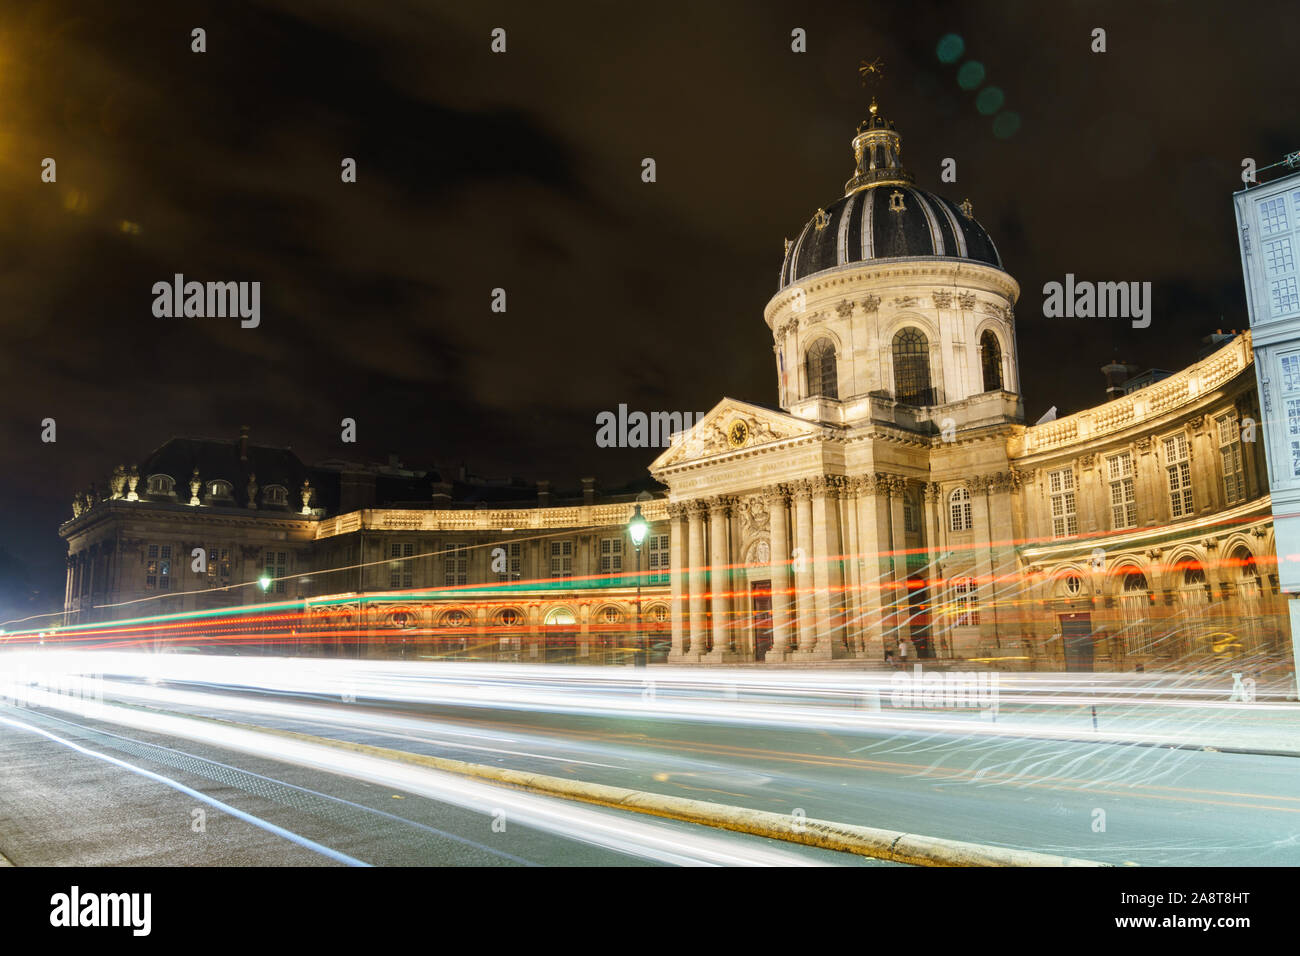 Location de light trails capturées avec une exposition longue nuit à Paris en face de l'Institut de France Banque D'Images